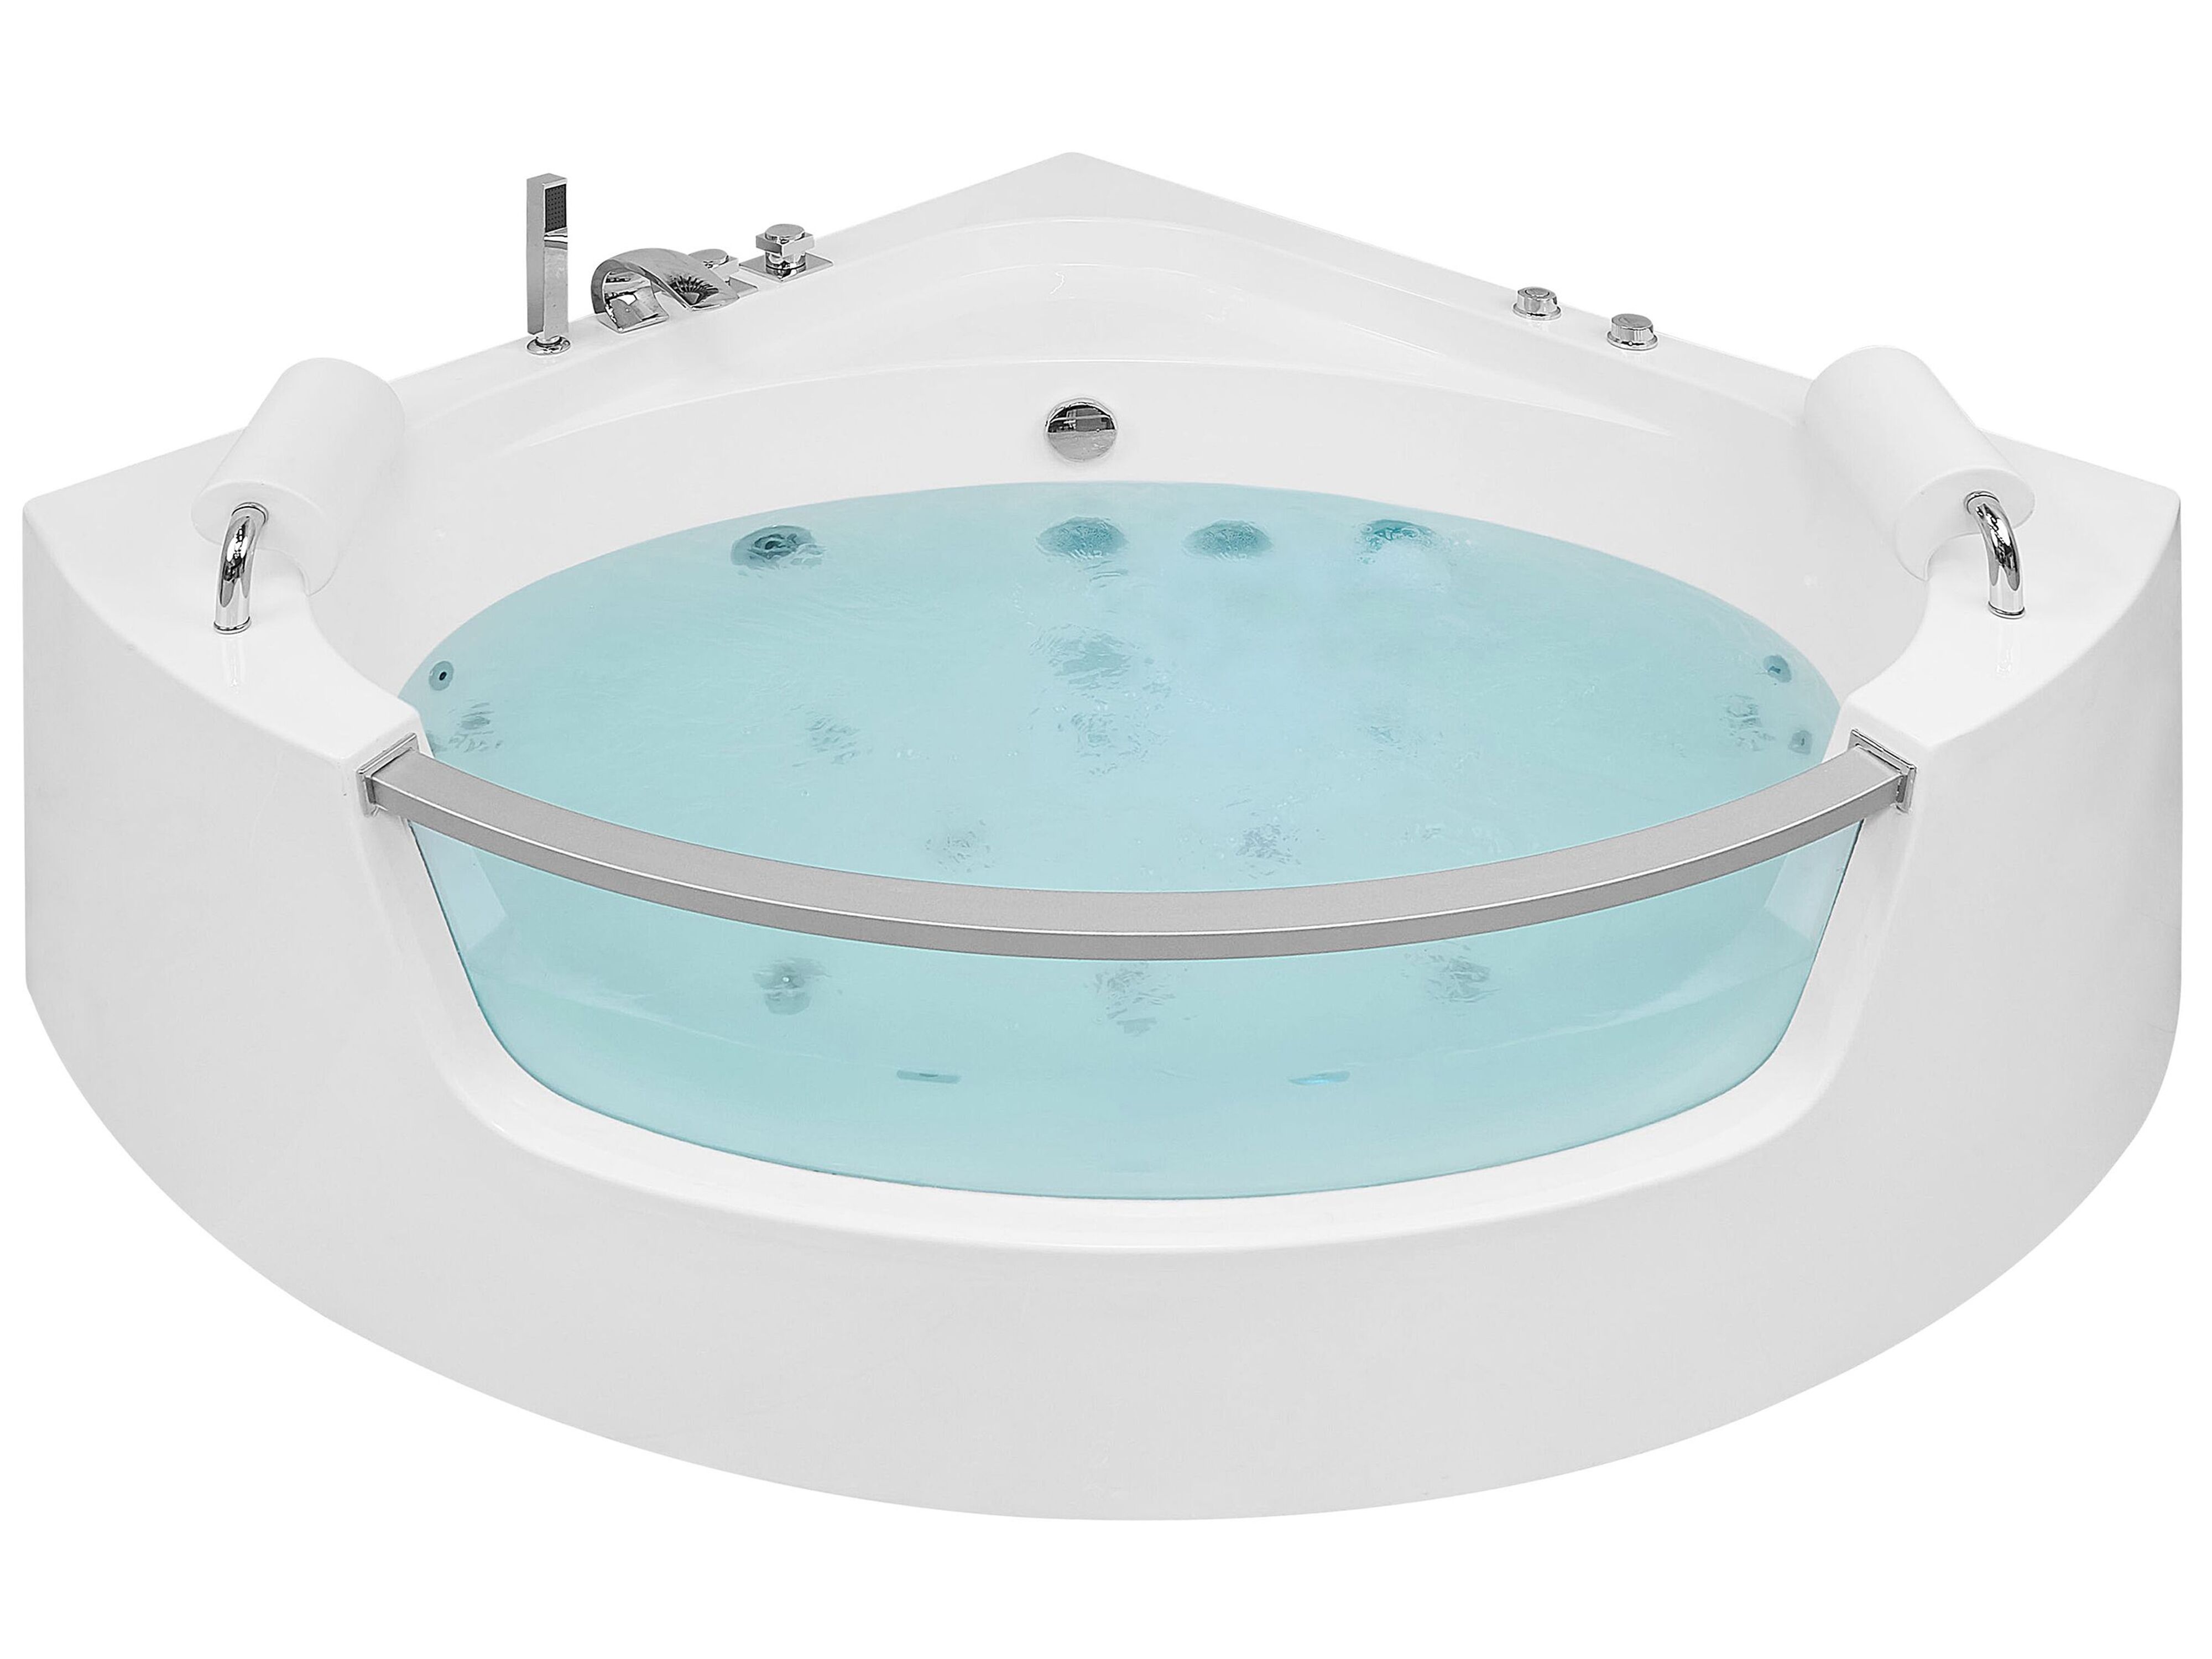 plug Koe wortel Hoekbad whirlpool LED wit 150 cm MANGLE | ✓ Gratis Levering